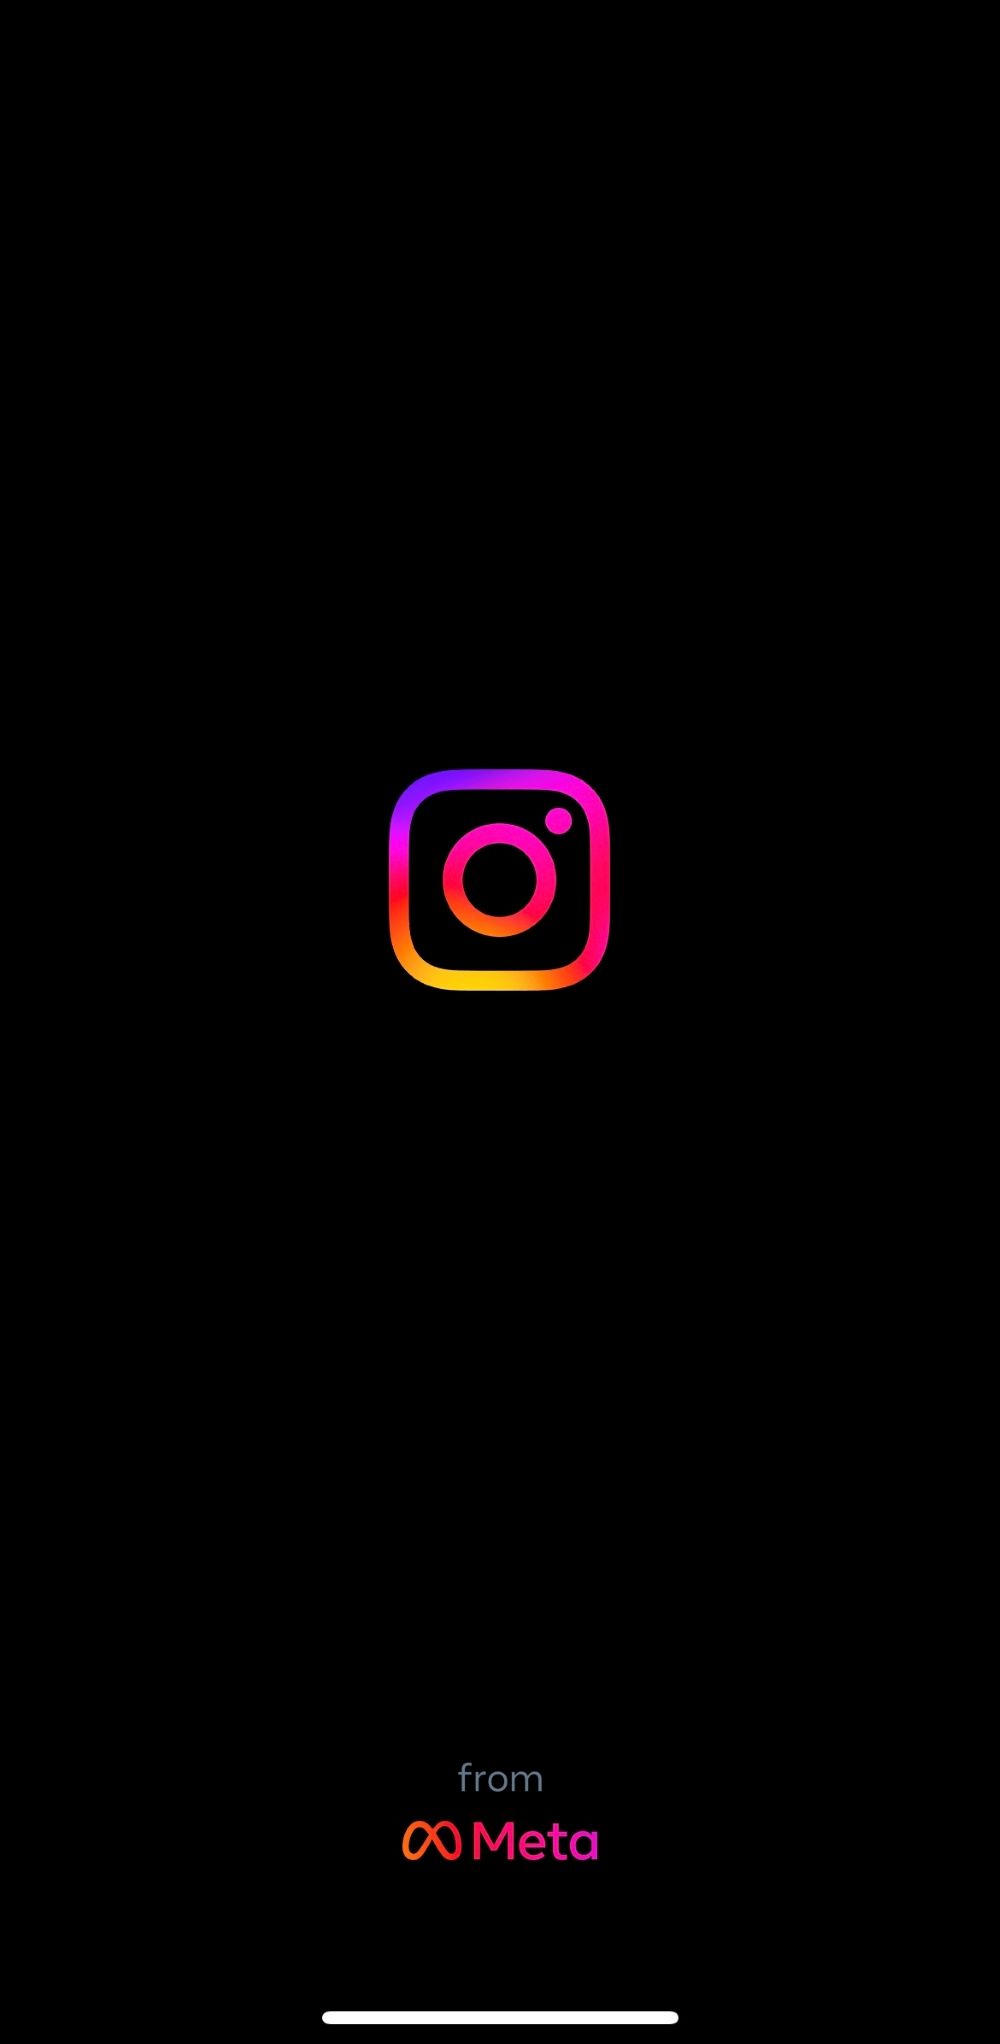 Launch Instagram App on Smartphone